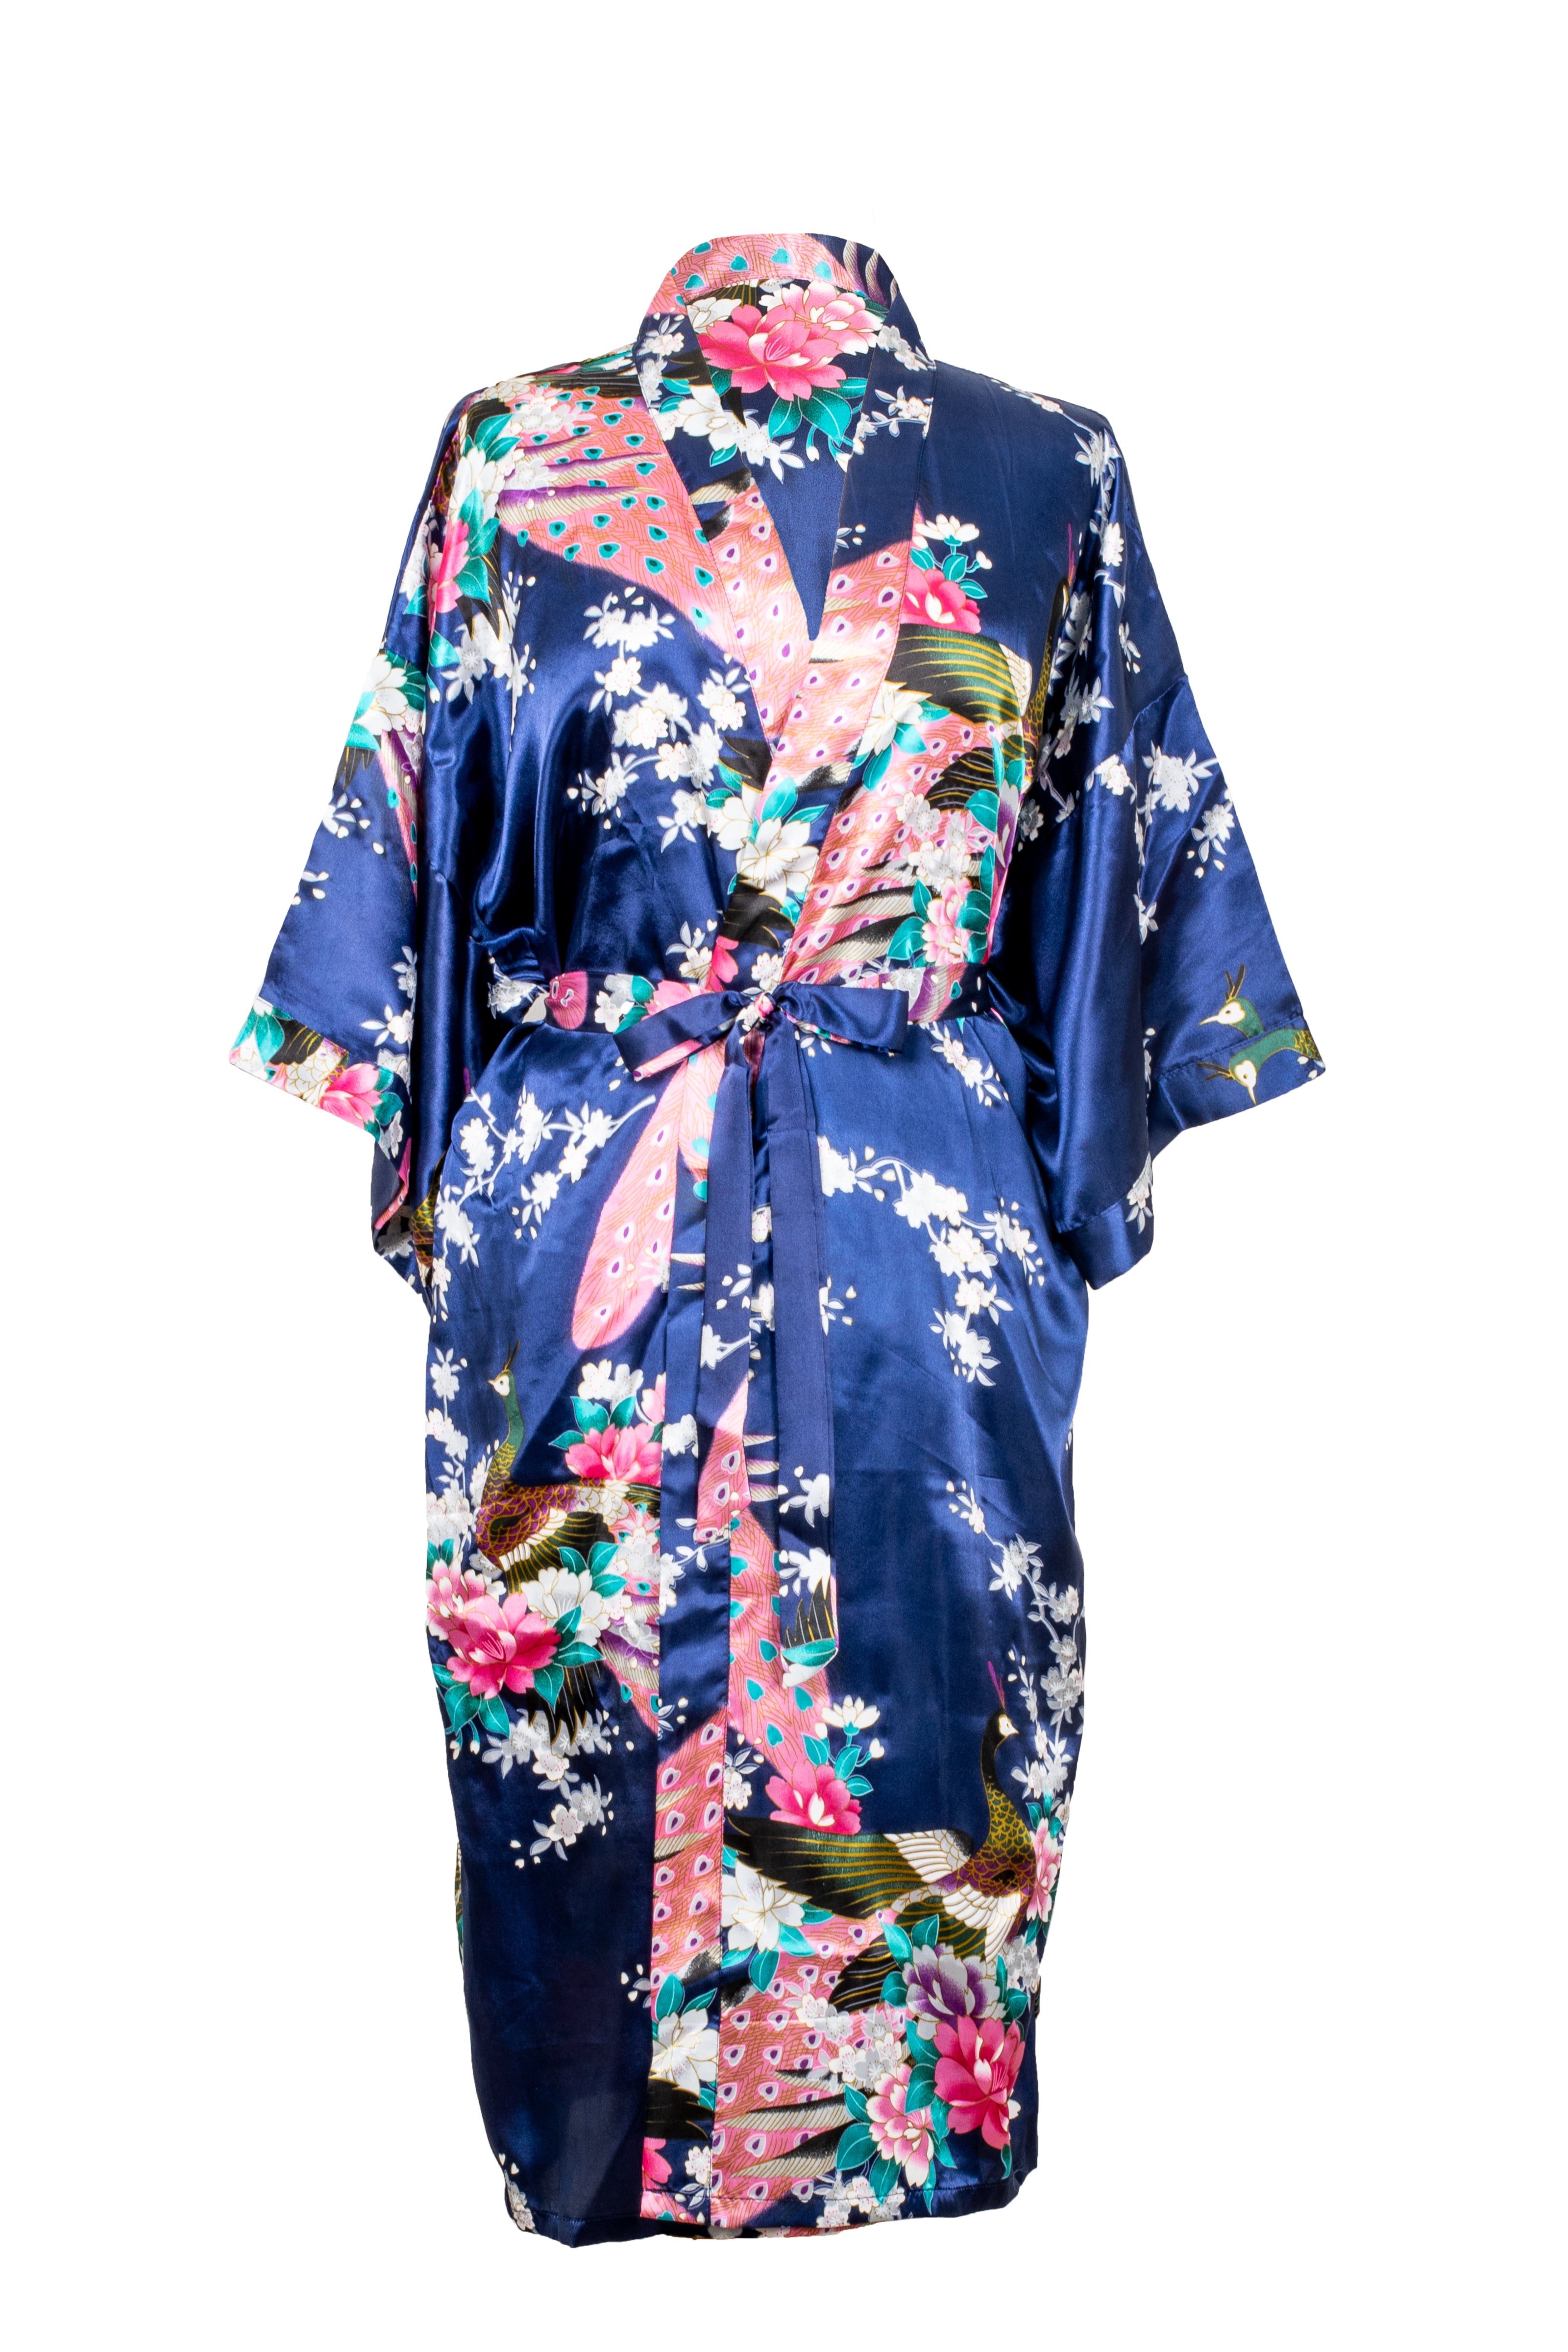 Kimono Peacock | Lightweight Women's kimono Robe | Affordable Luxury ...